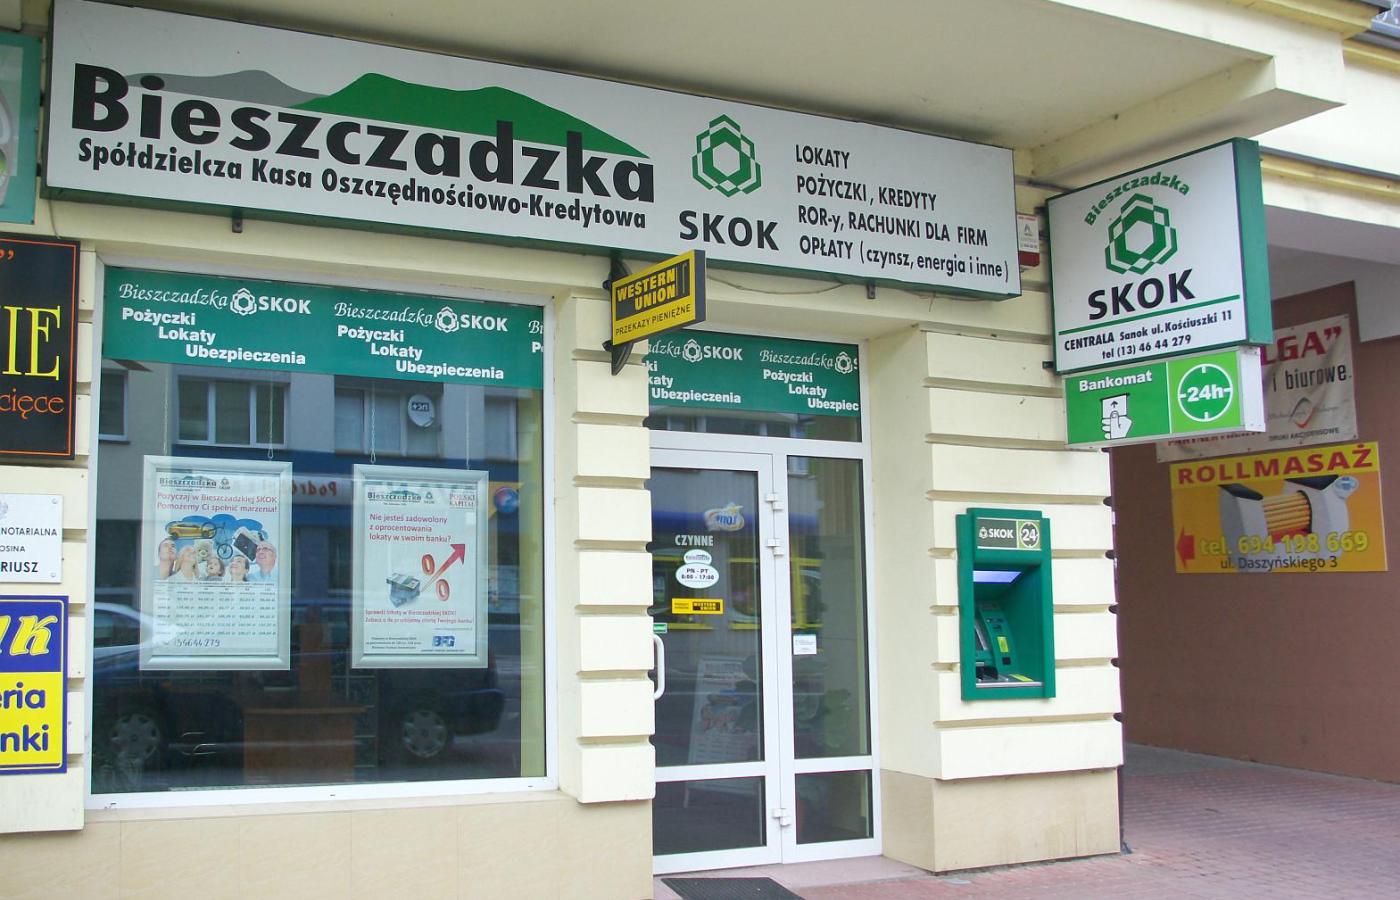 Dwa lata temu działało w Polsce 55 kas SKOK, teraz zostało ich już tylko 44.